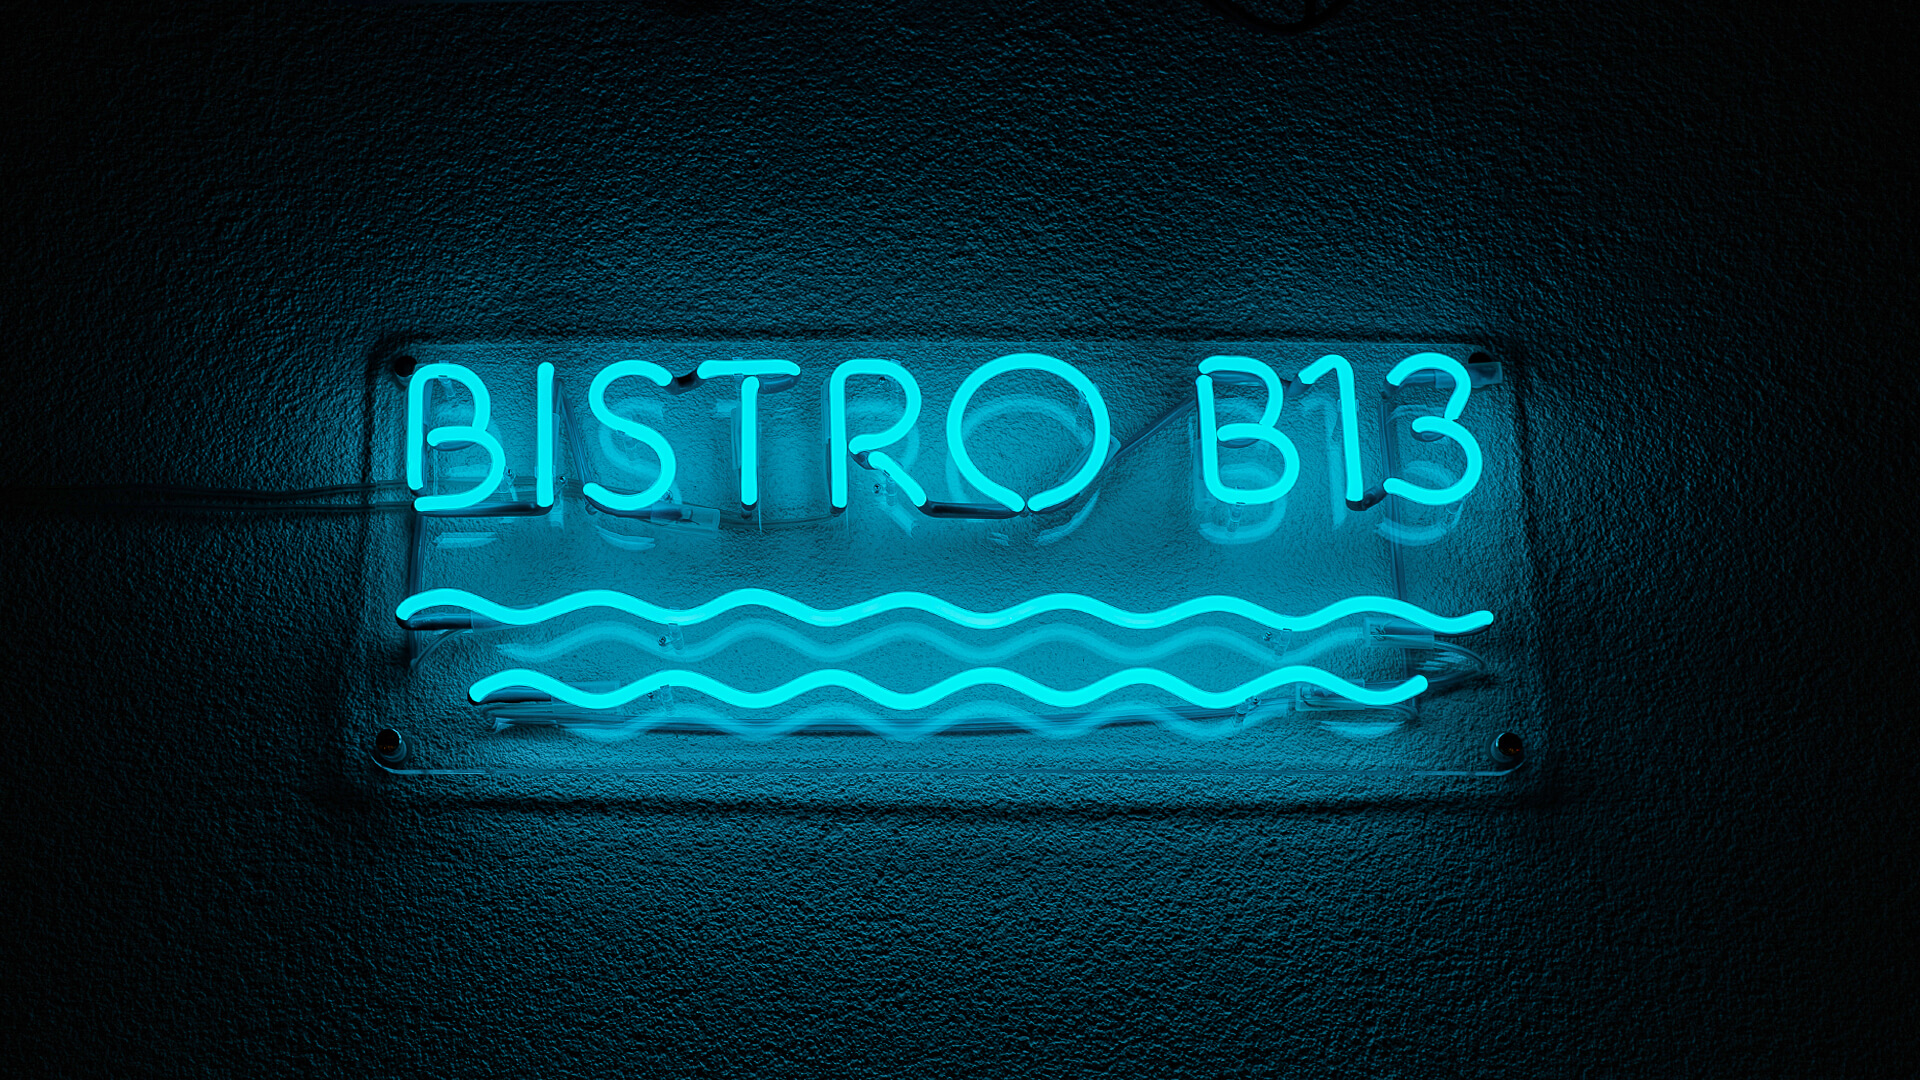 Bistro B13 - Enseigne de bistrot en néon bleu, avec des vagues sous l'inscription.